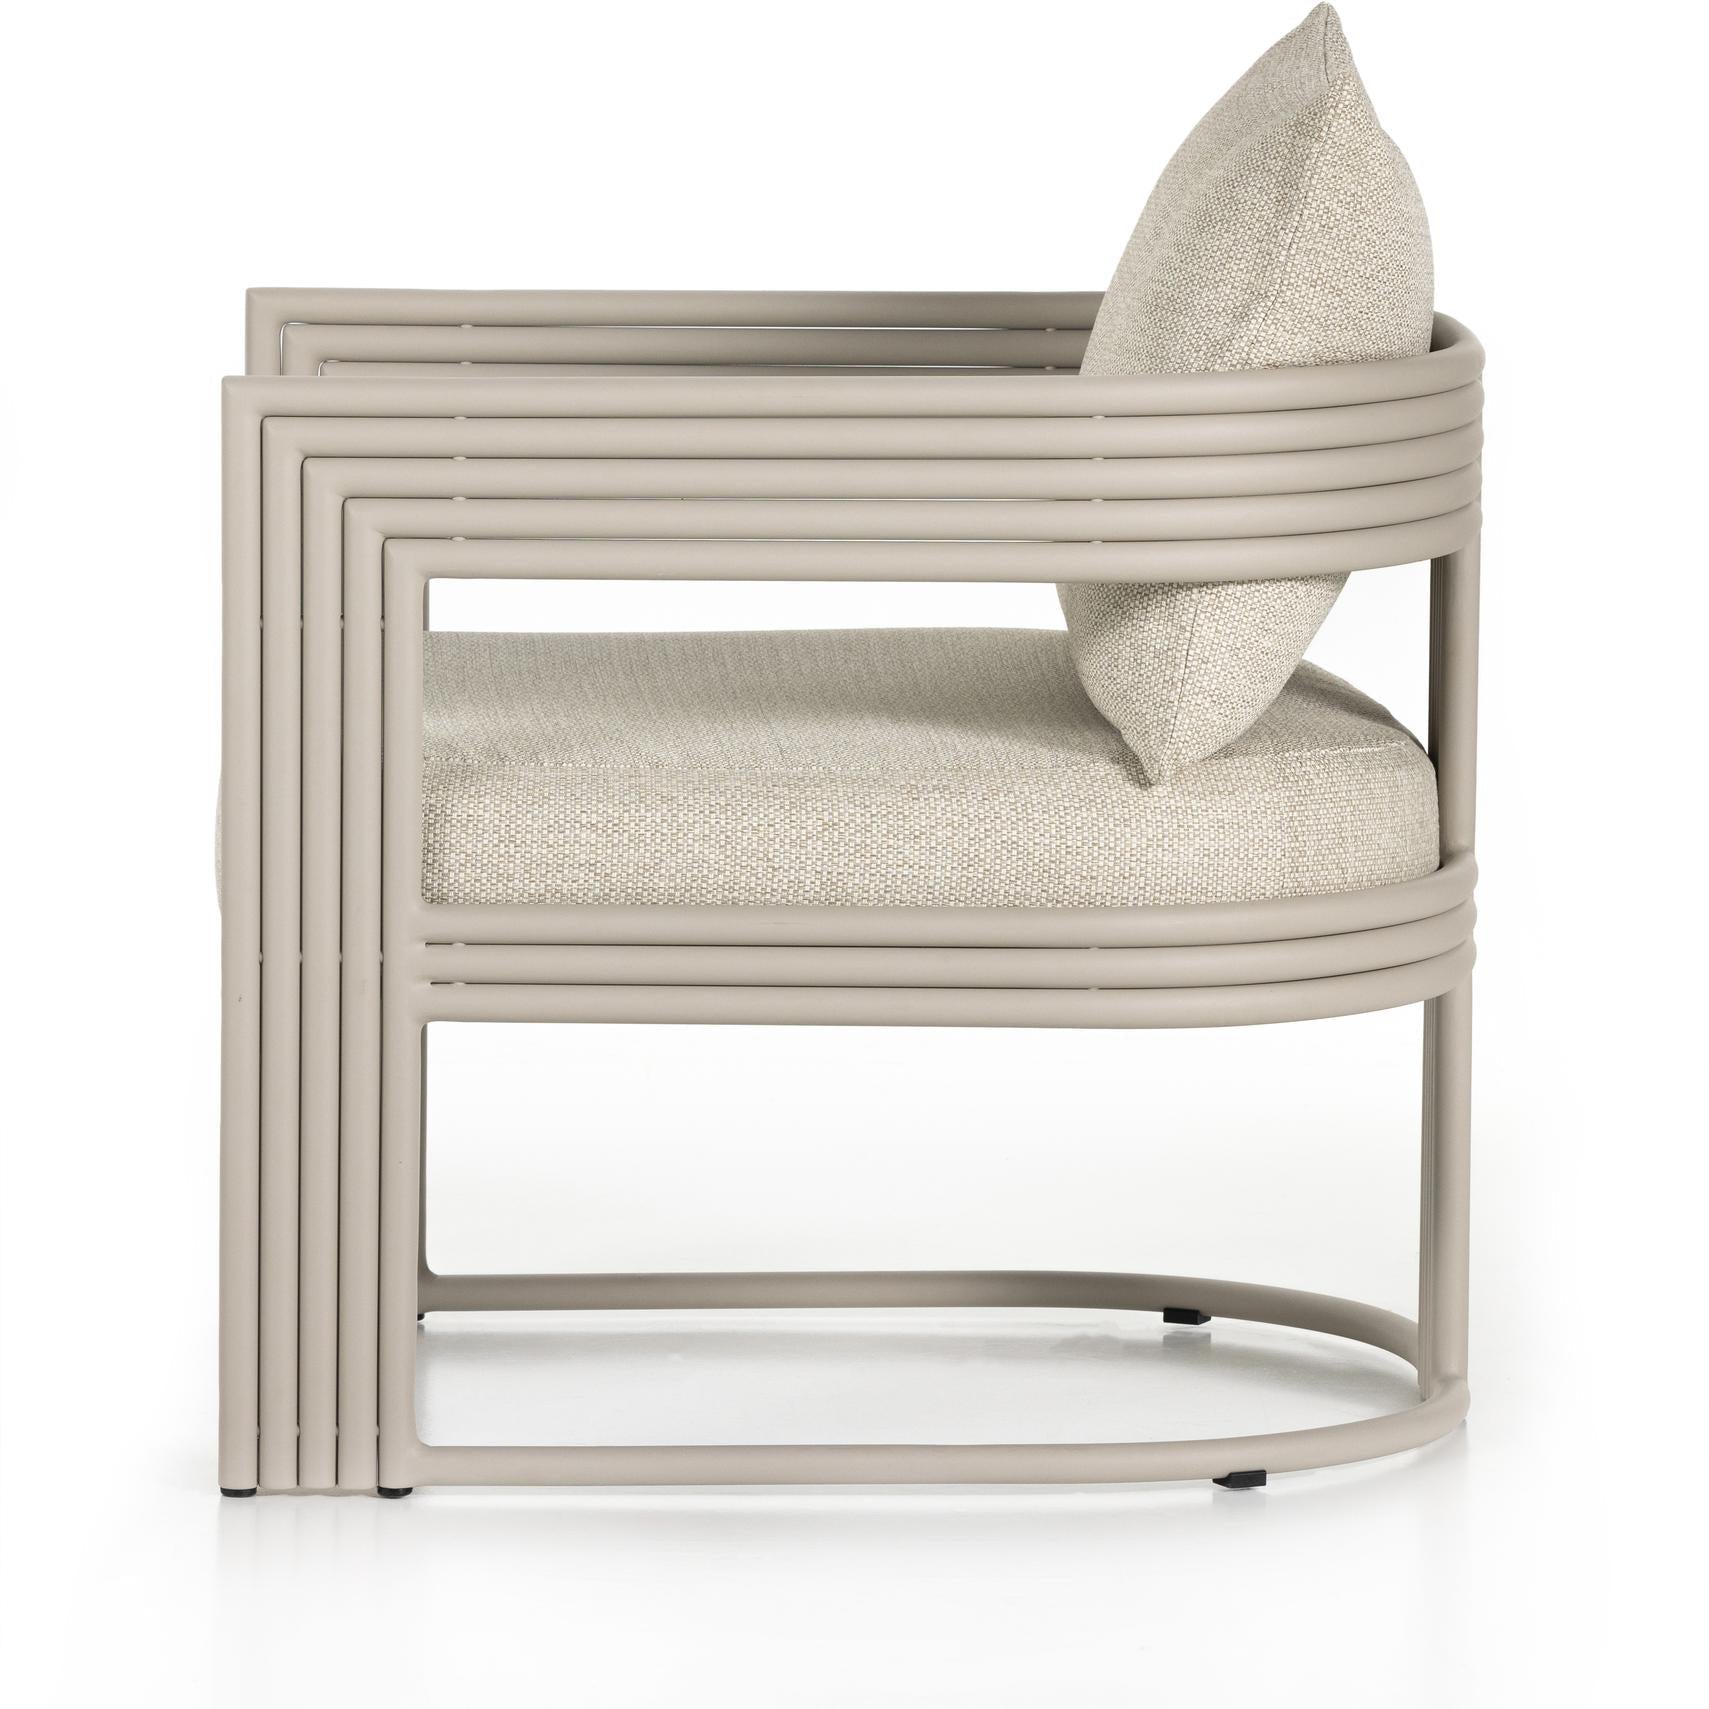 Lambert Outdoor Chair - StyleMeGHD - Modern Home Decor